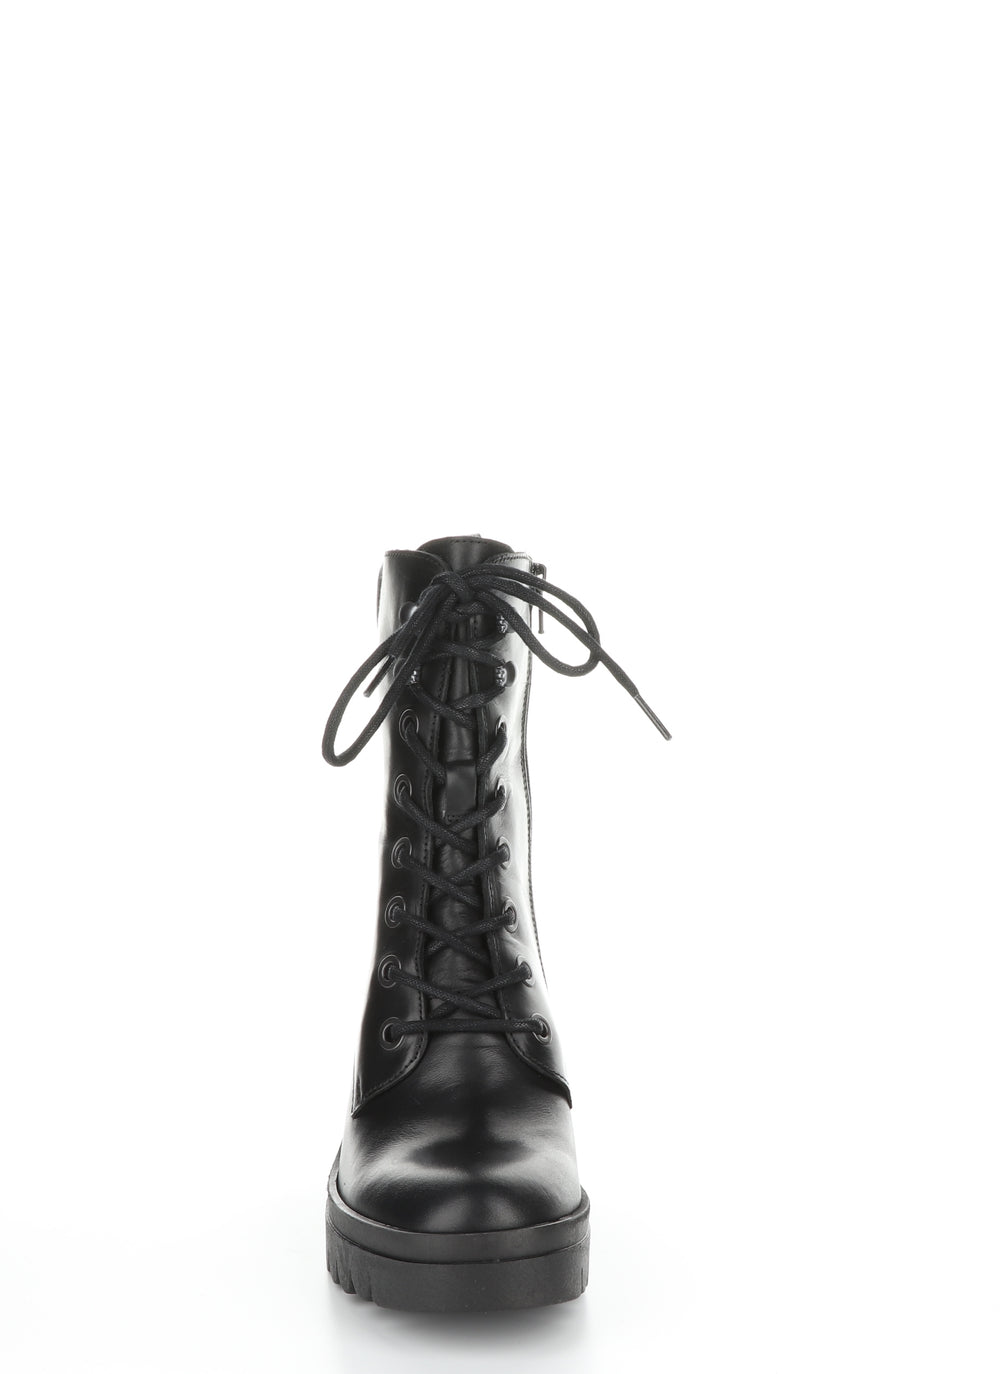 TIEL642FLY Black Zip Up Boots